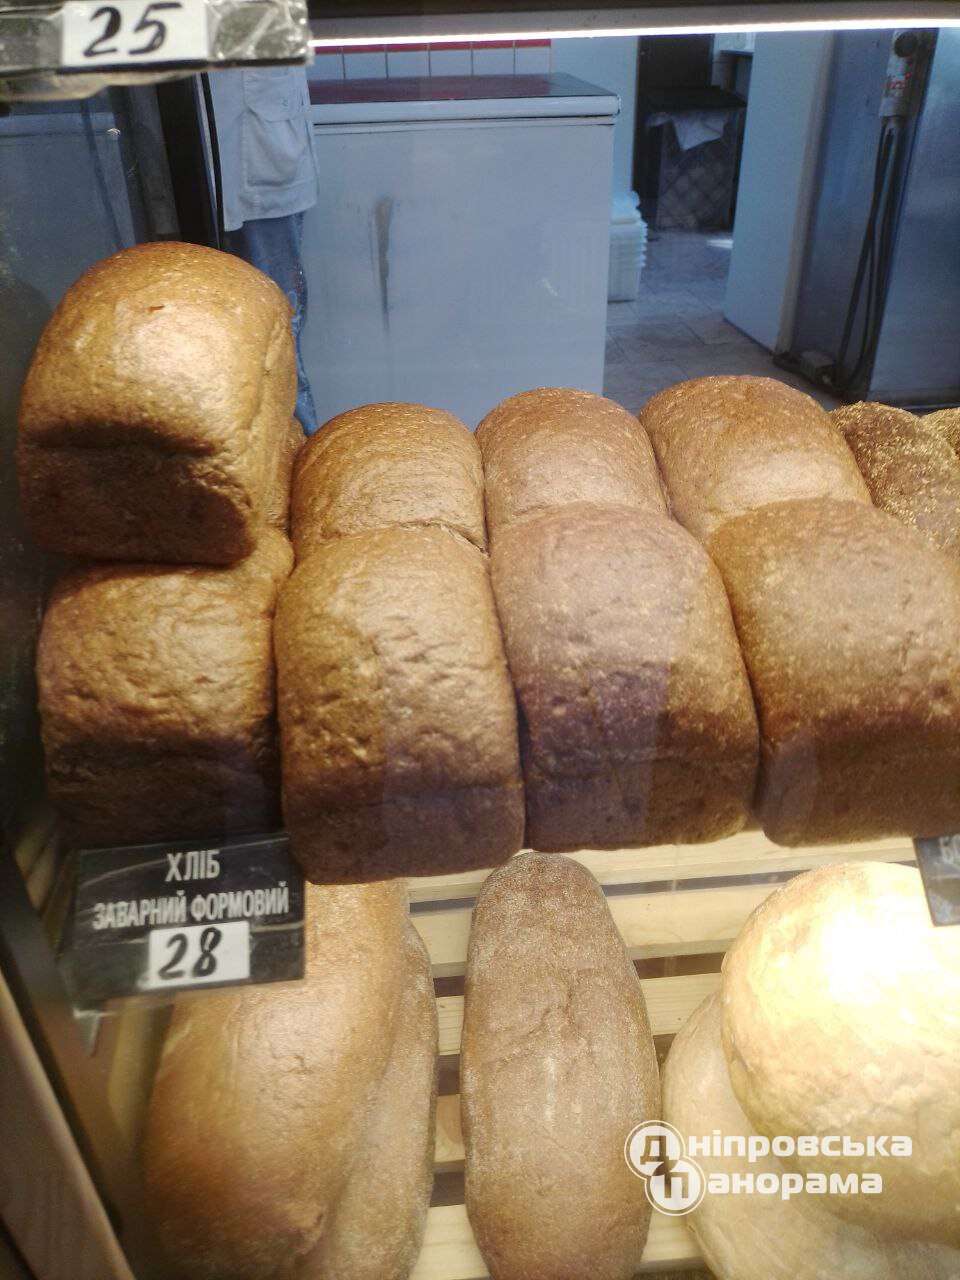 цены на хлеб Днепр